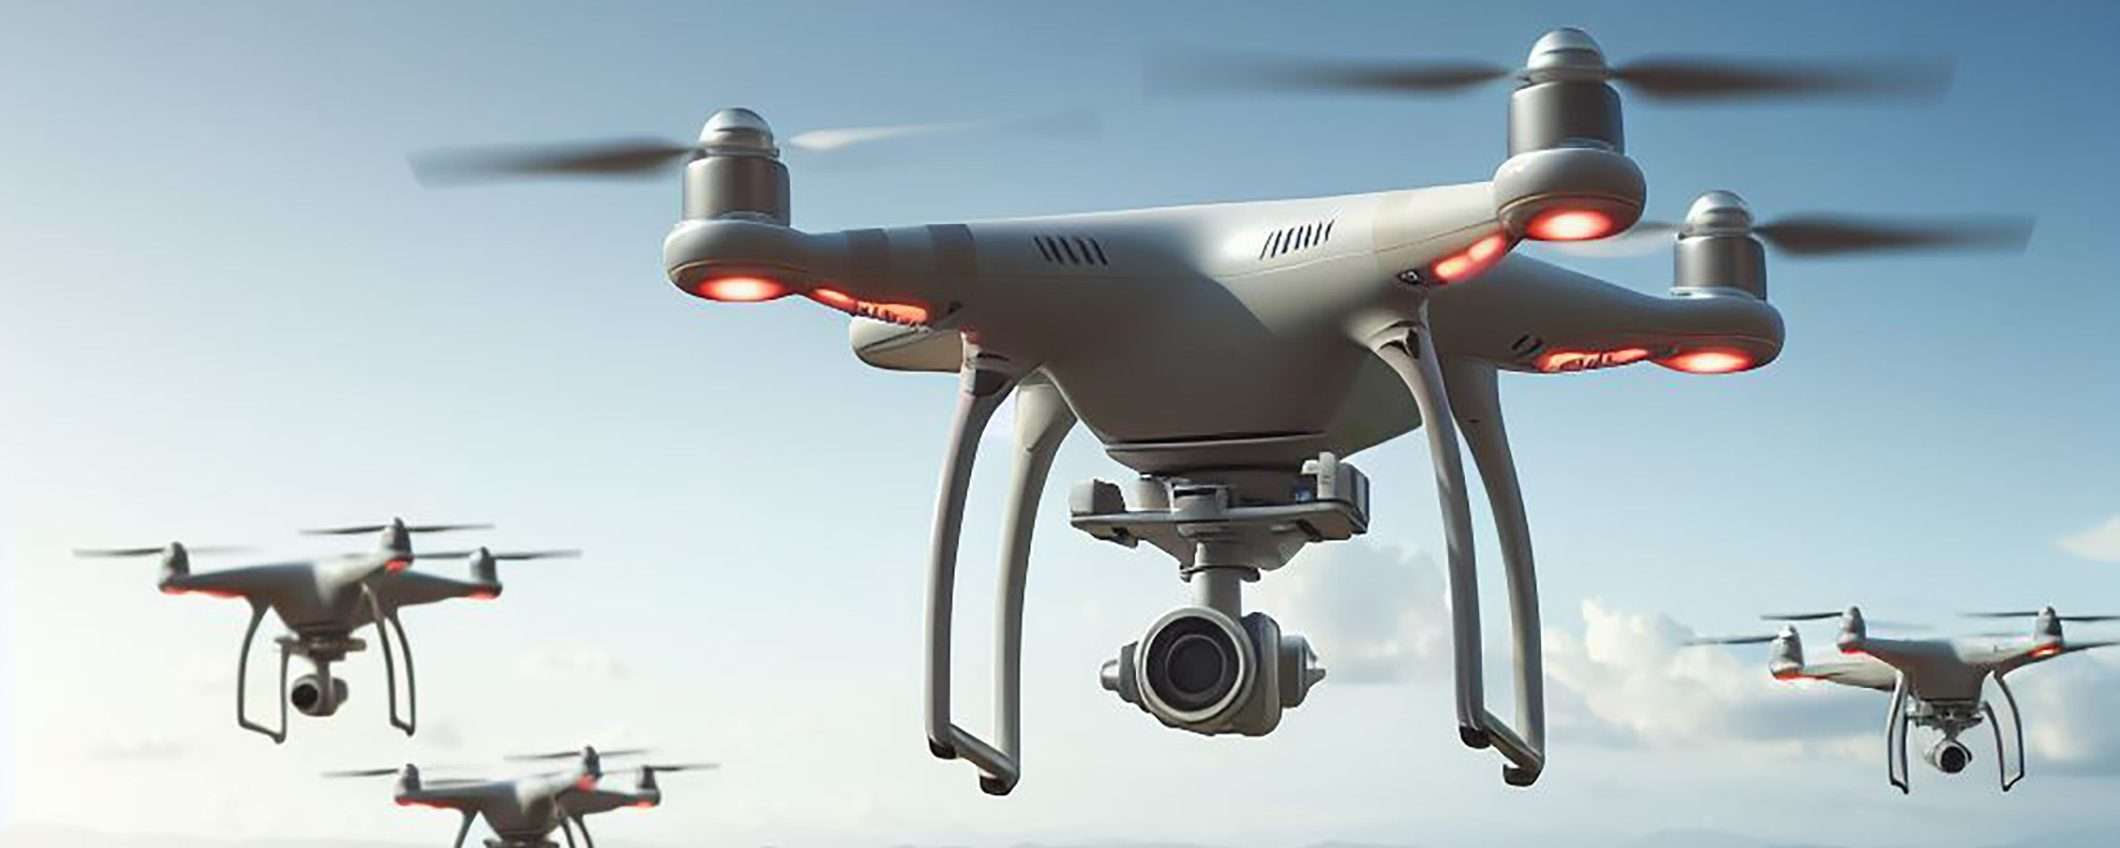 Via libera all'uso dei droni per il controllo del territorio